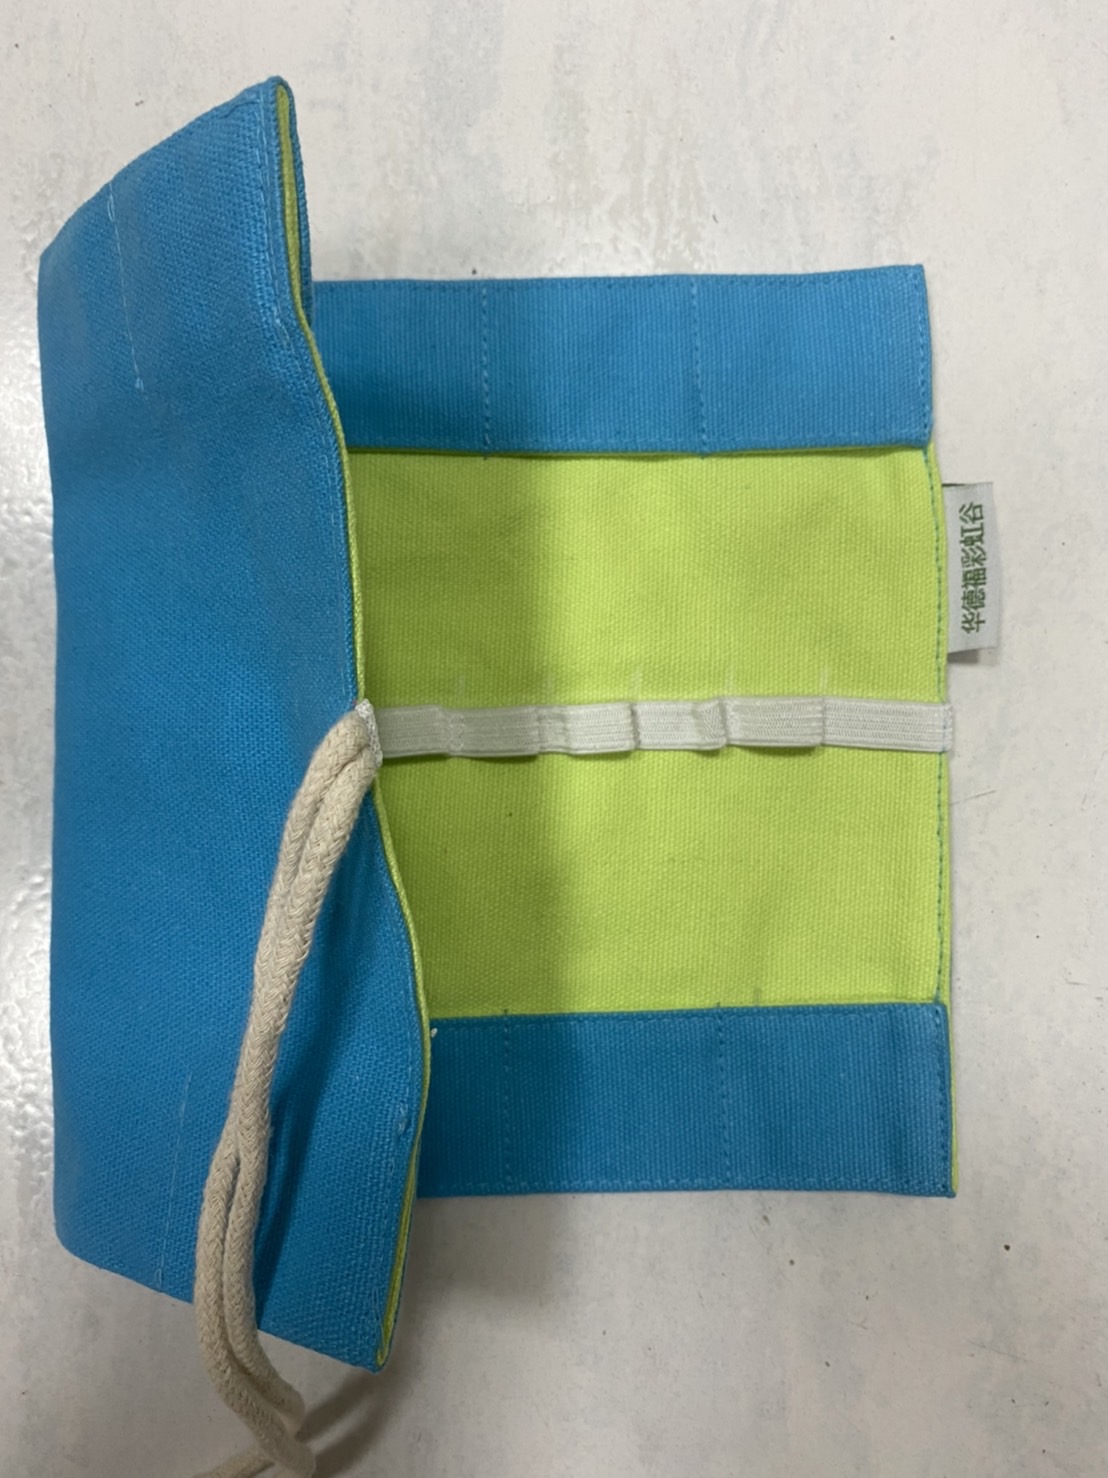 蠟磚蠟筆袋(藍綠色)F-009